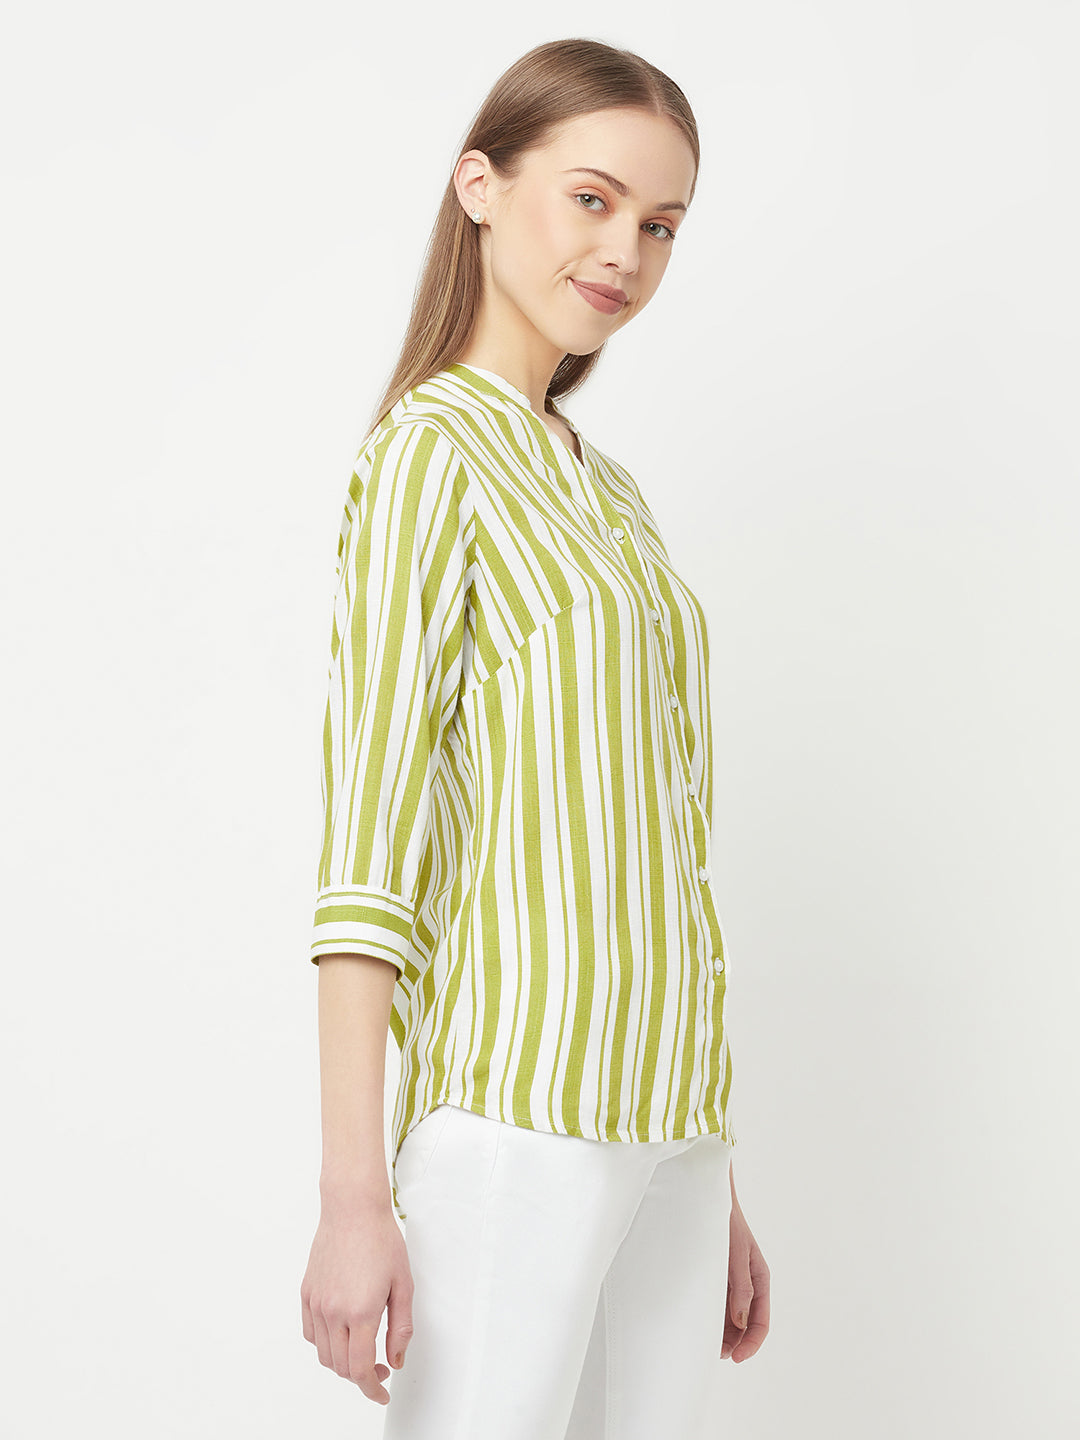 Green Striped Casual Shirt - Women Shirts